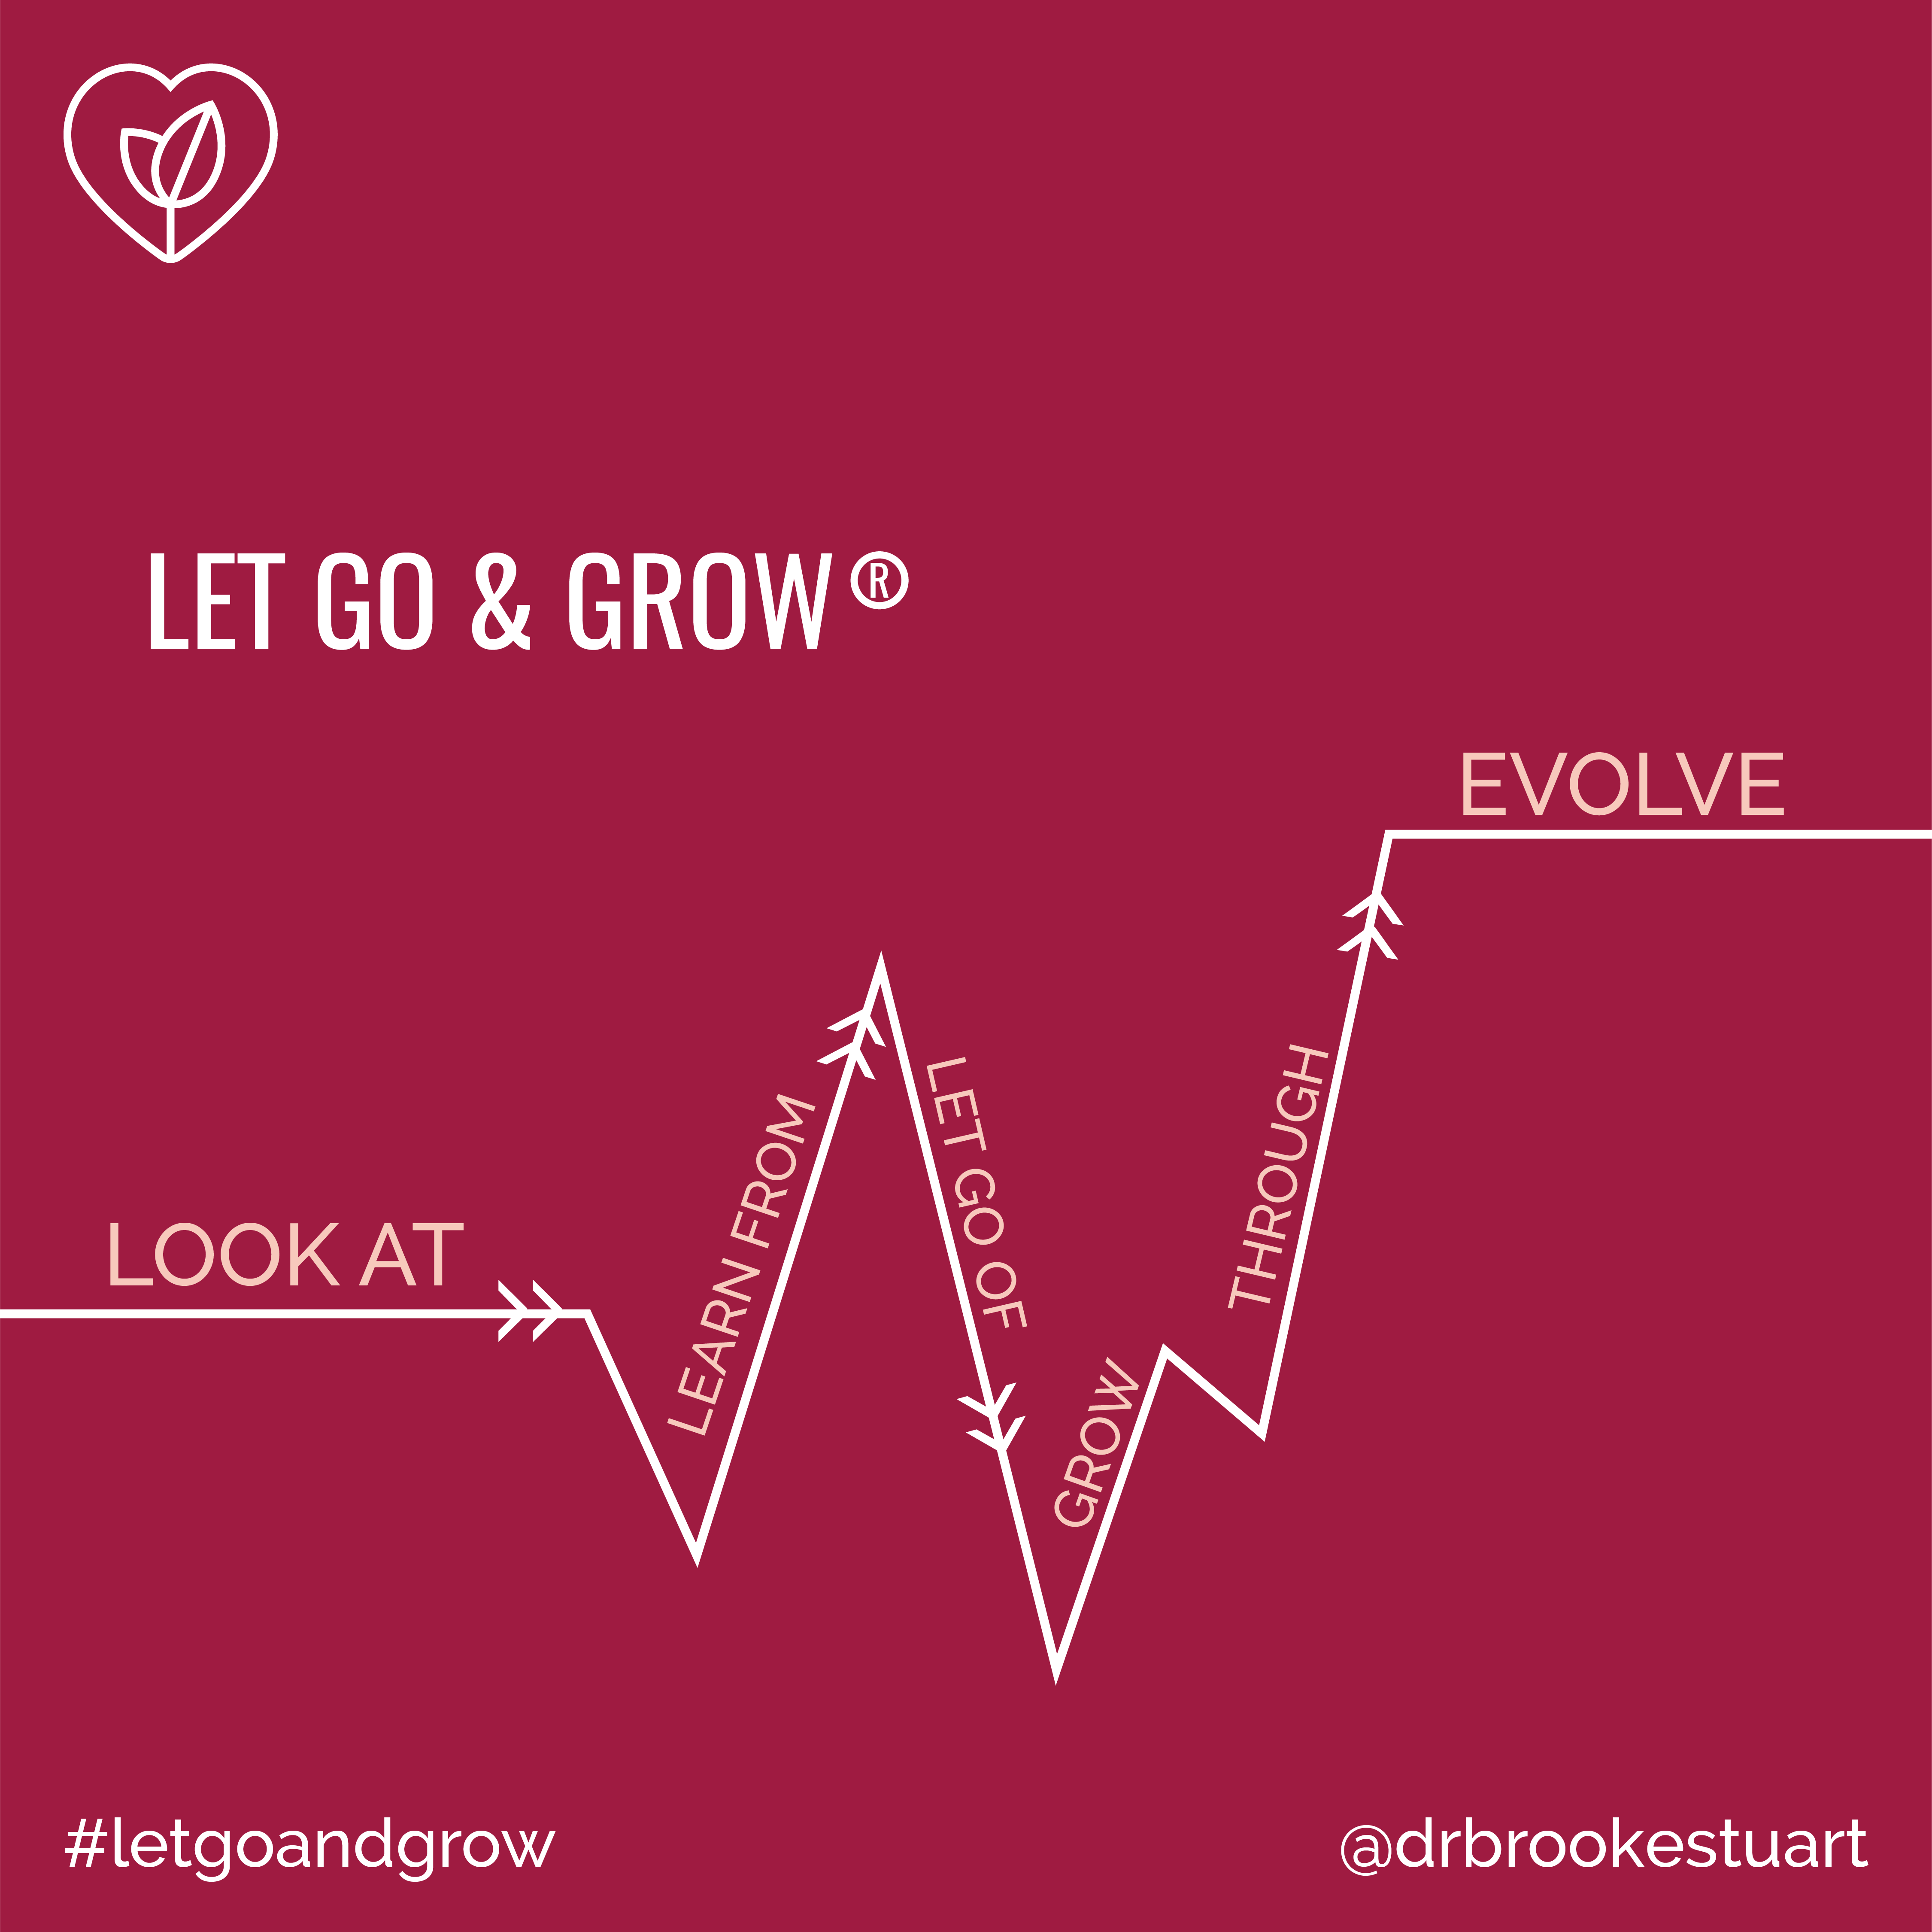 Let Go & Grow Evolution